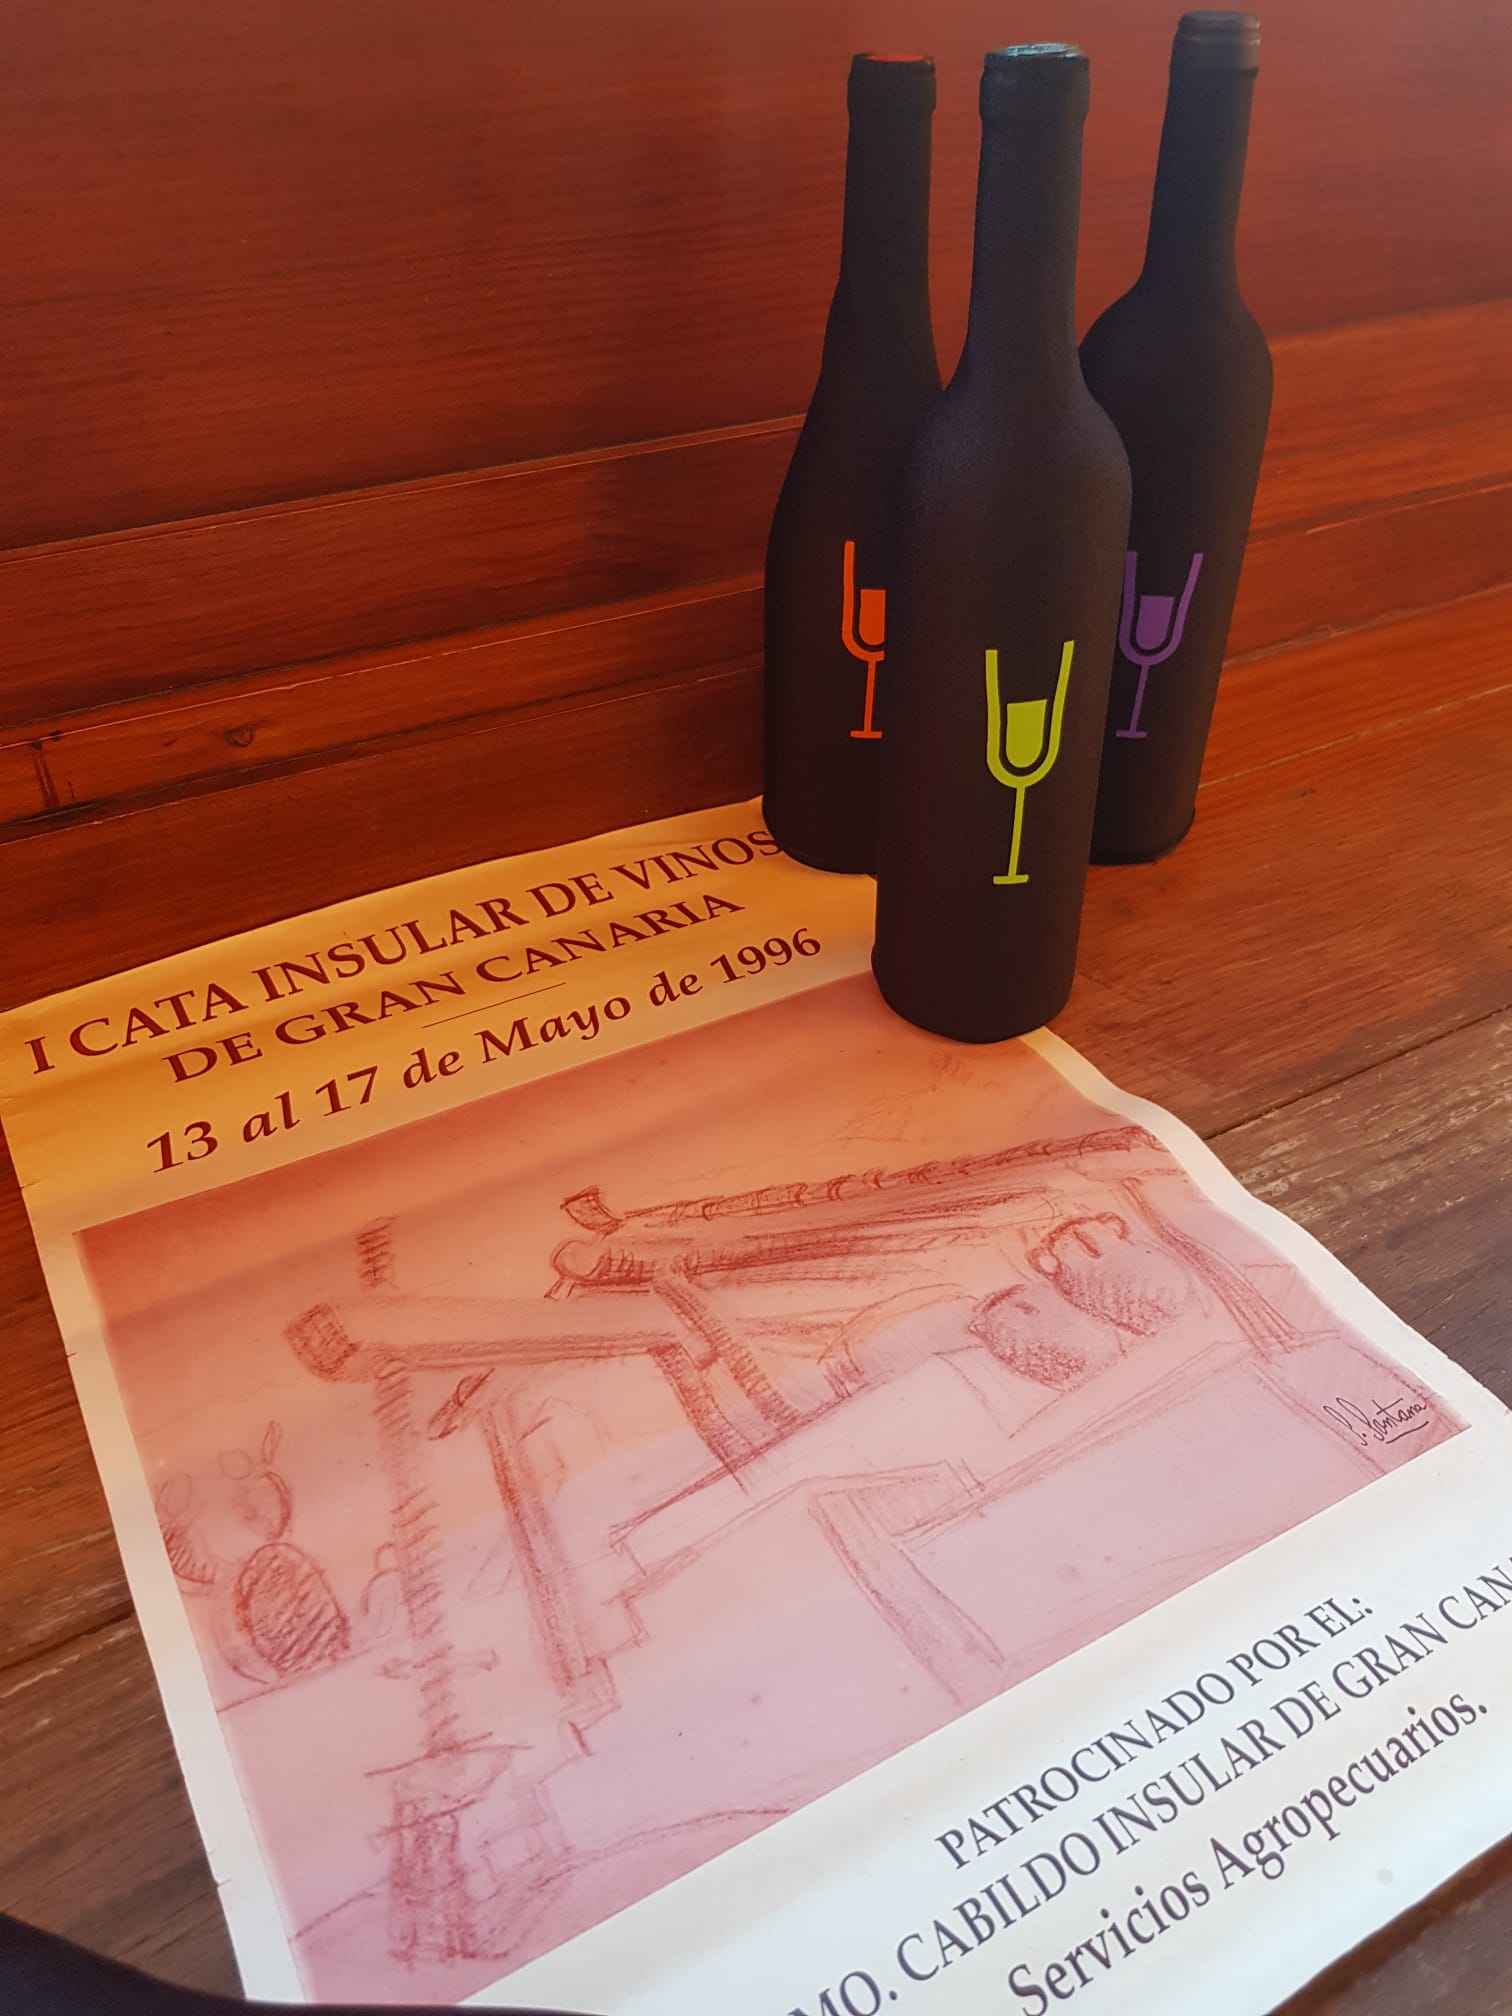 El Cabildo de Gran Canaria convoca a las bodegas a la XXV edición de la Cata Insular de Vinos